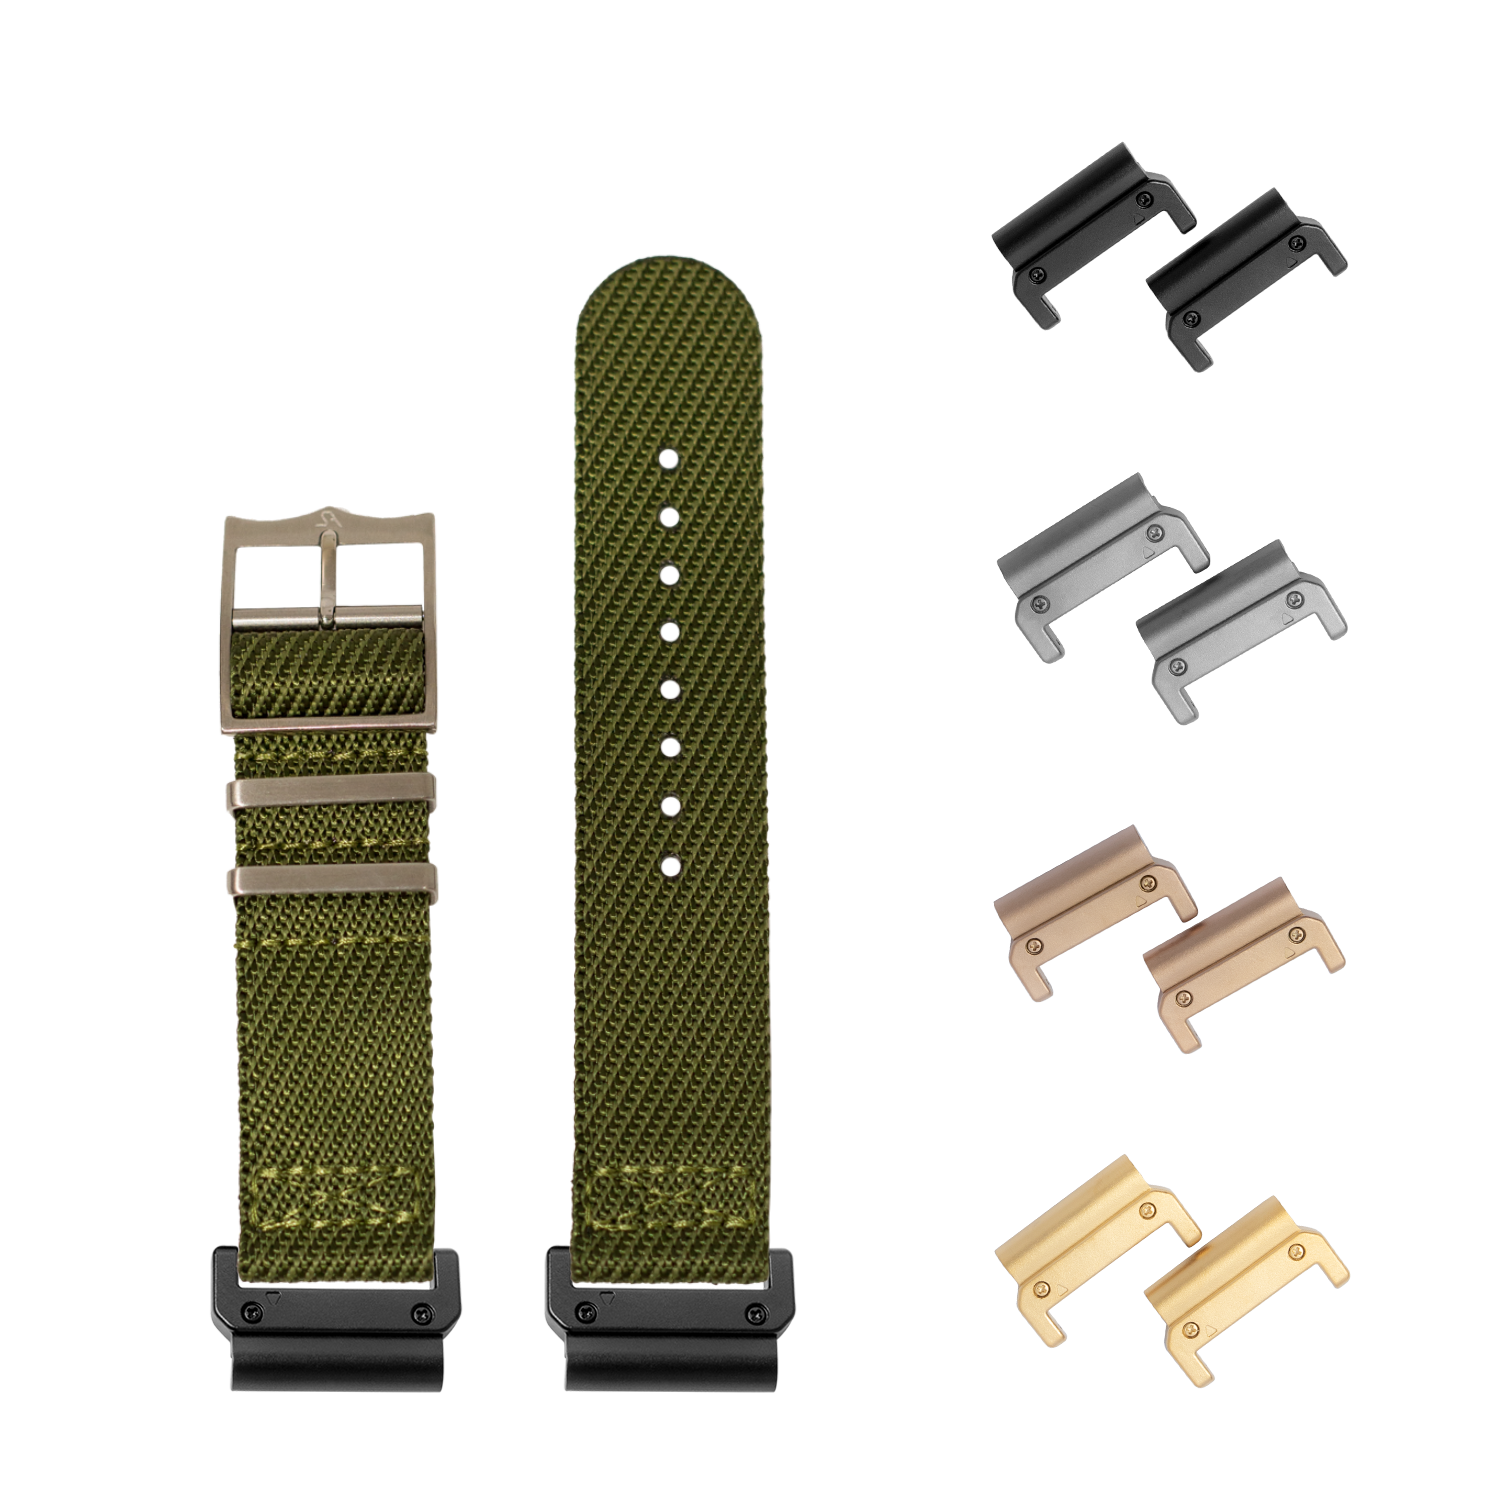 [QuickFit] Cross Militex - Army Green 22mm